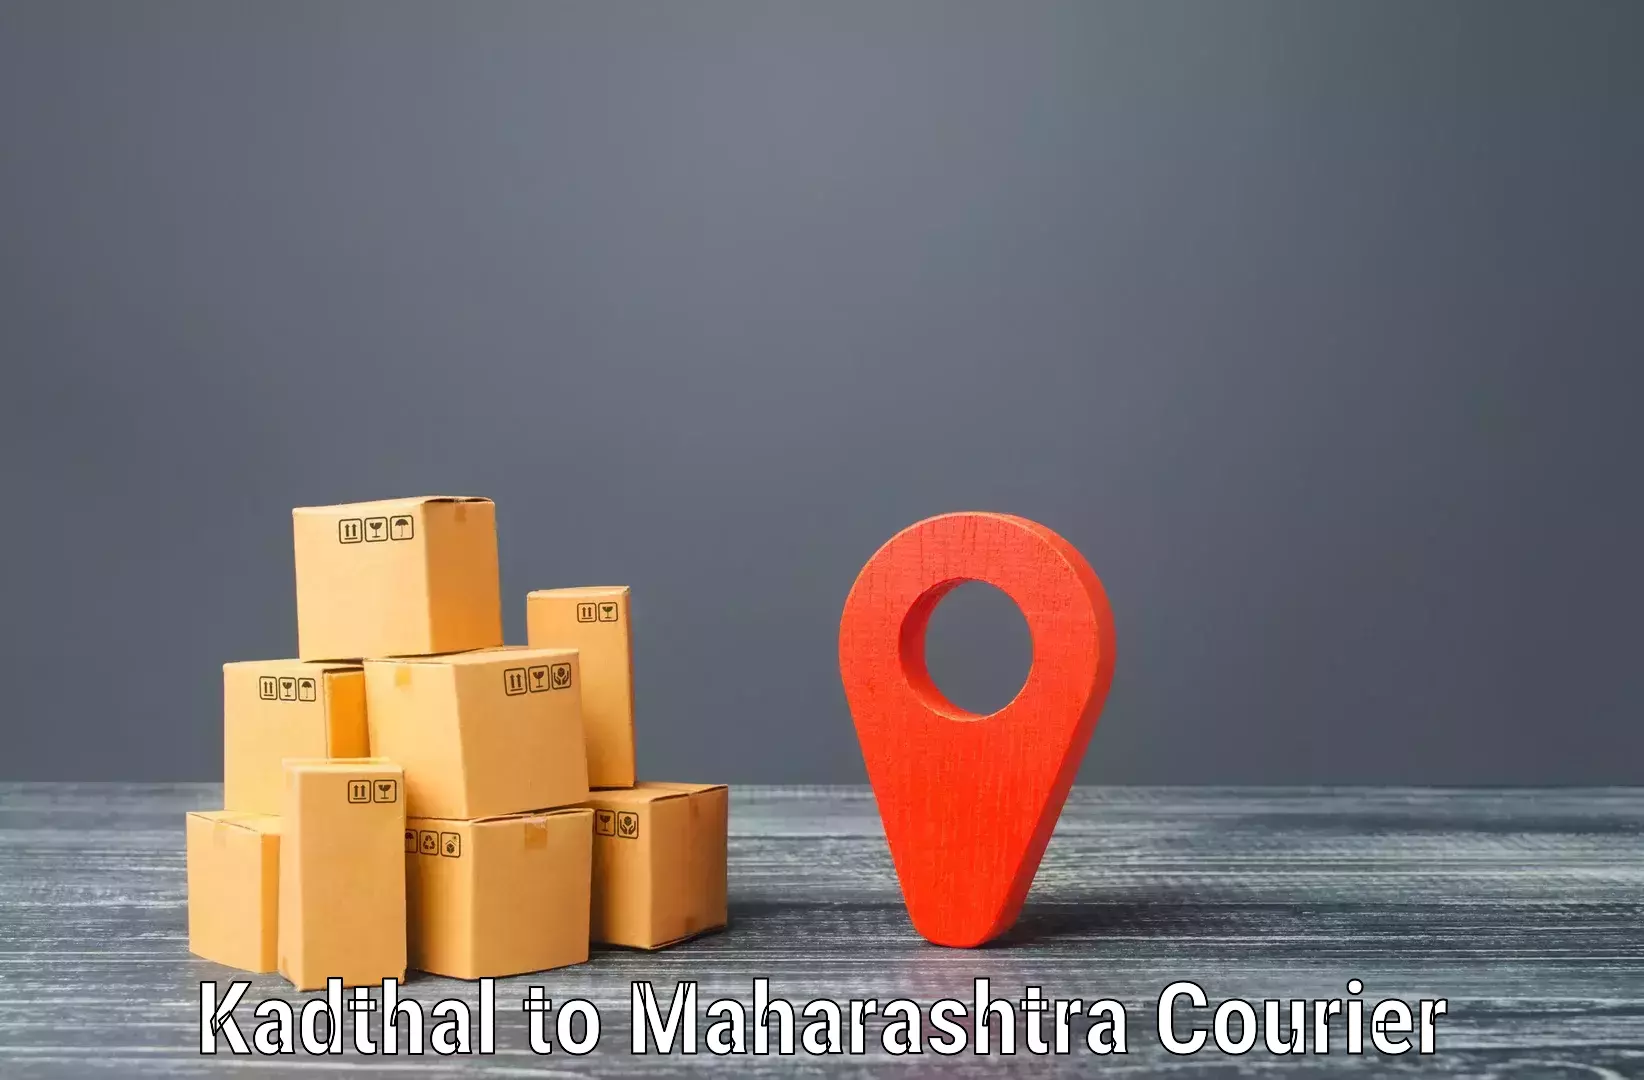 Global courier networks Kadthal to Rahimatpur